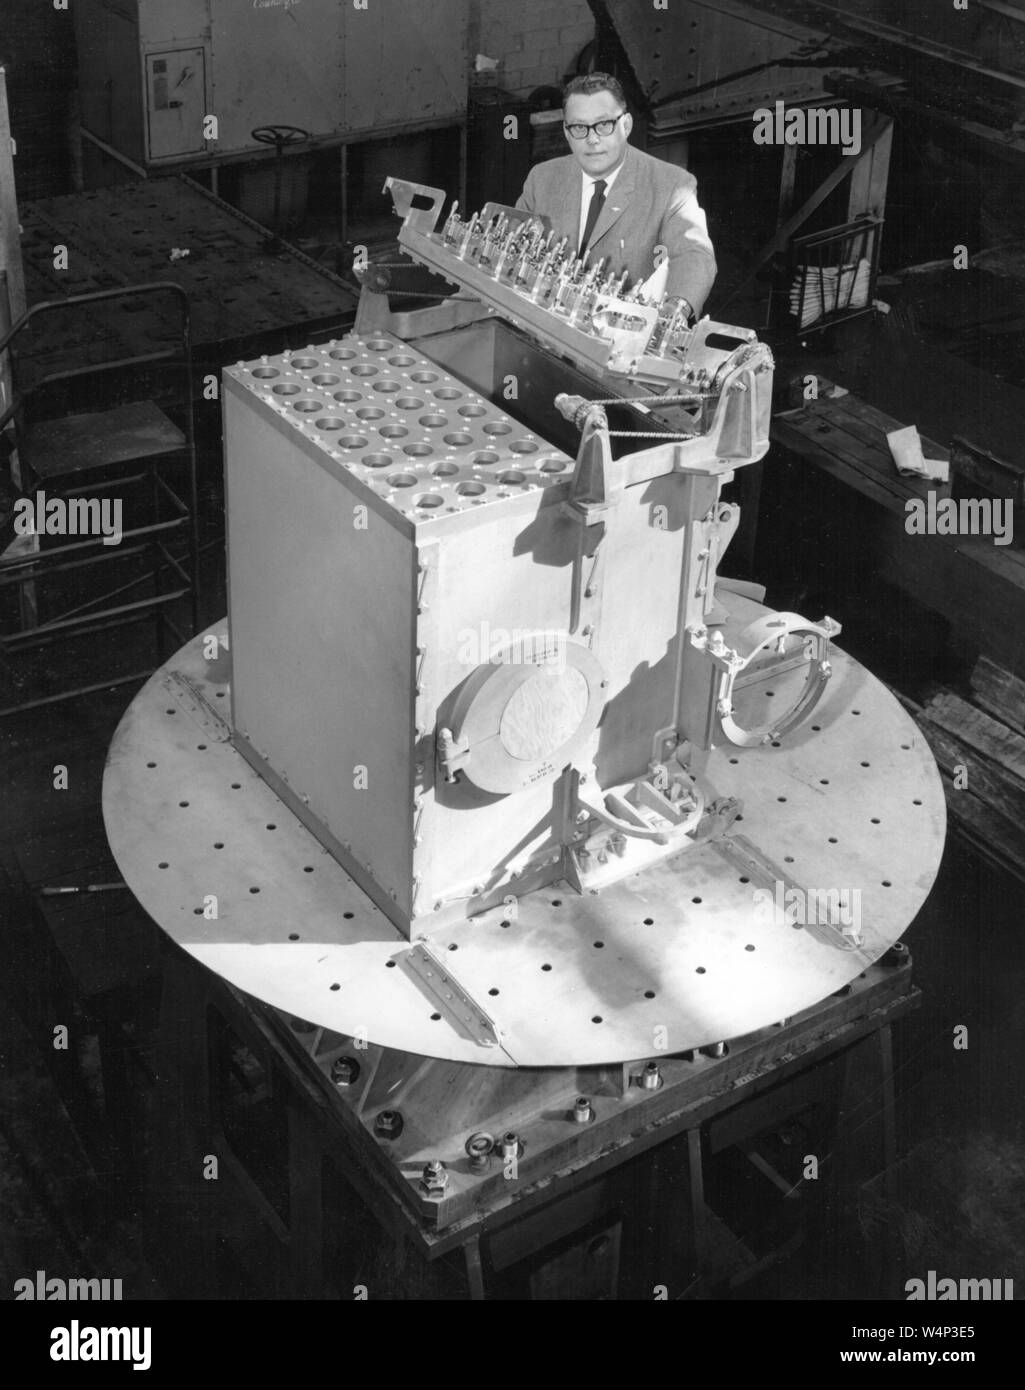 NASA-Techniker arbeitet auf der Pflaume Bach Reaktorkern, Pflaume Brook Station, John H. Glenn Research Center bei Lewis Field, Cleveland, Ohio, 2003. Mit freundlicher Genehmigung der Nationalen Luft- und Raumfahrtbehörde (NASA). () Stockfoto